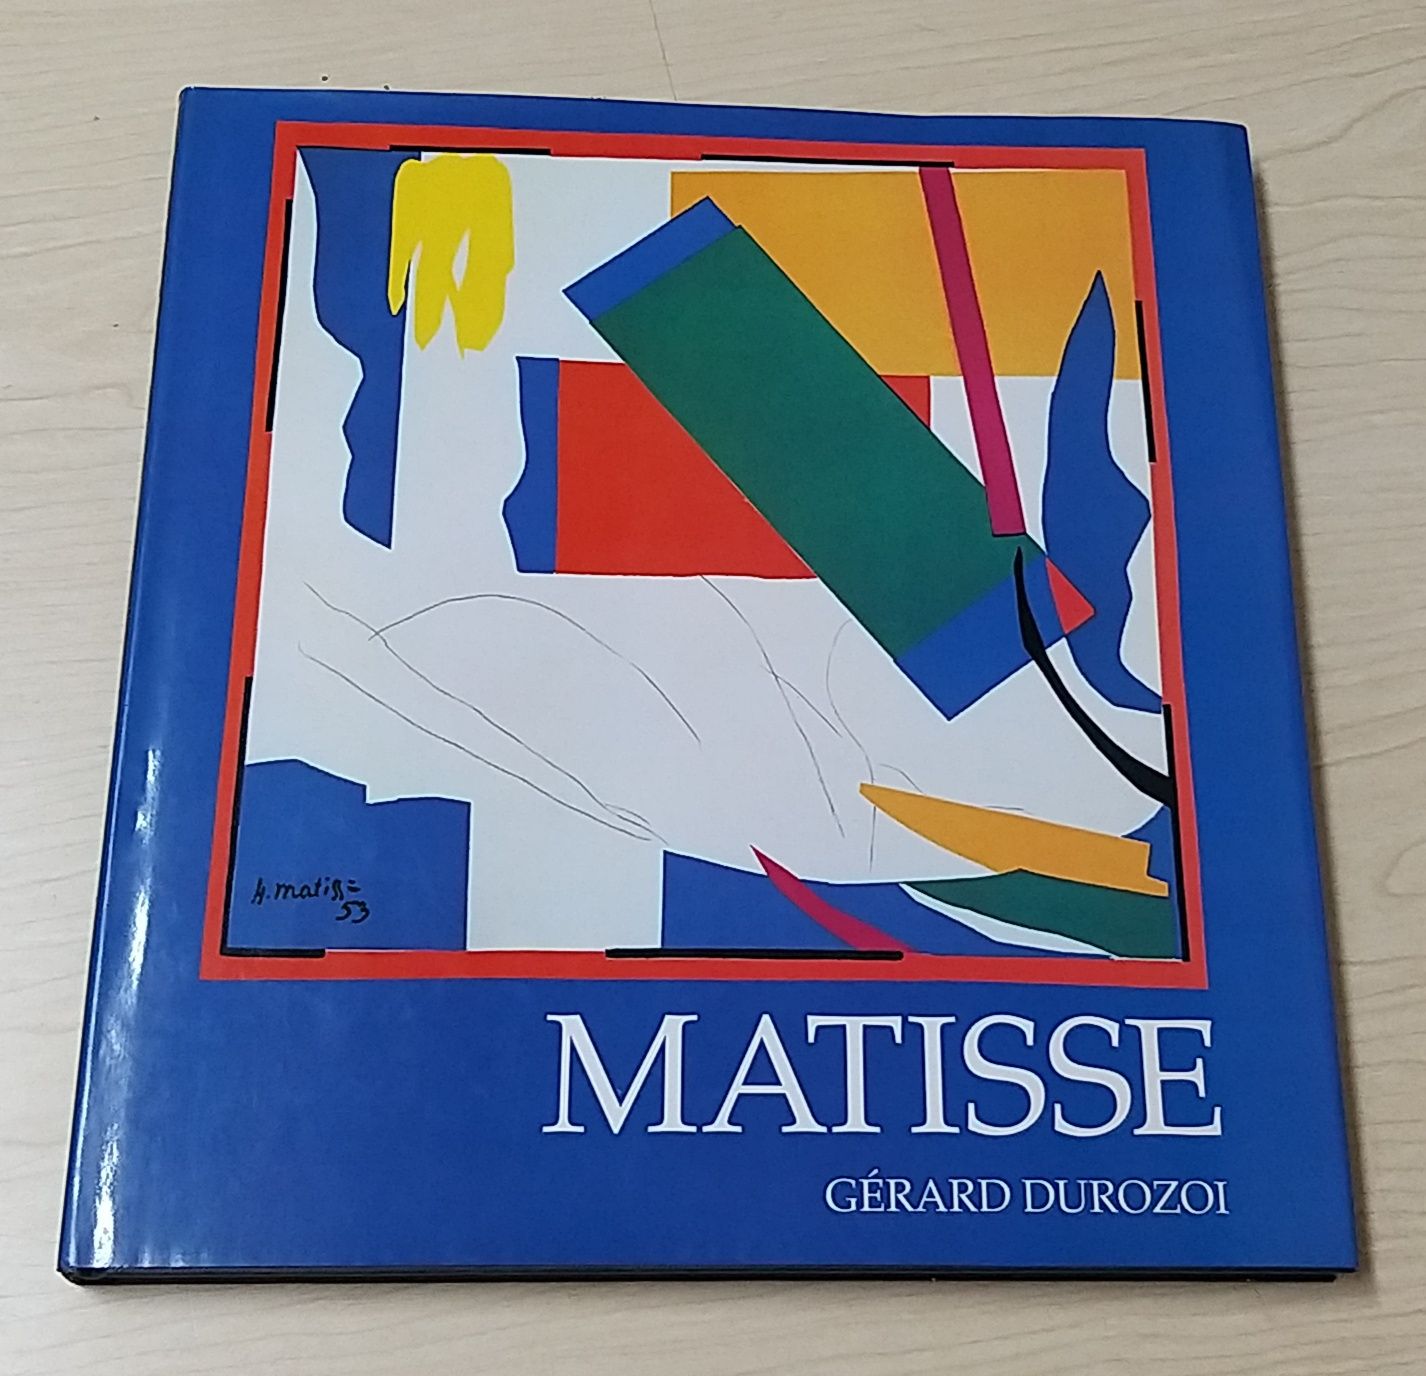 Matisse de Gérard Durozot.